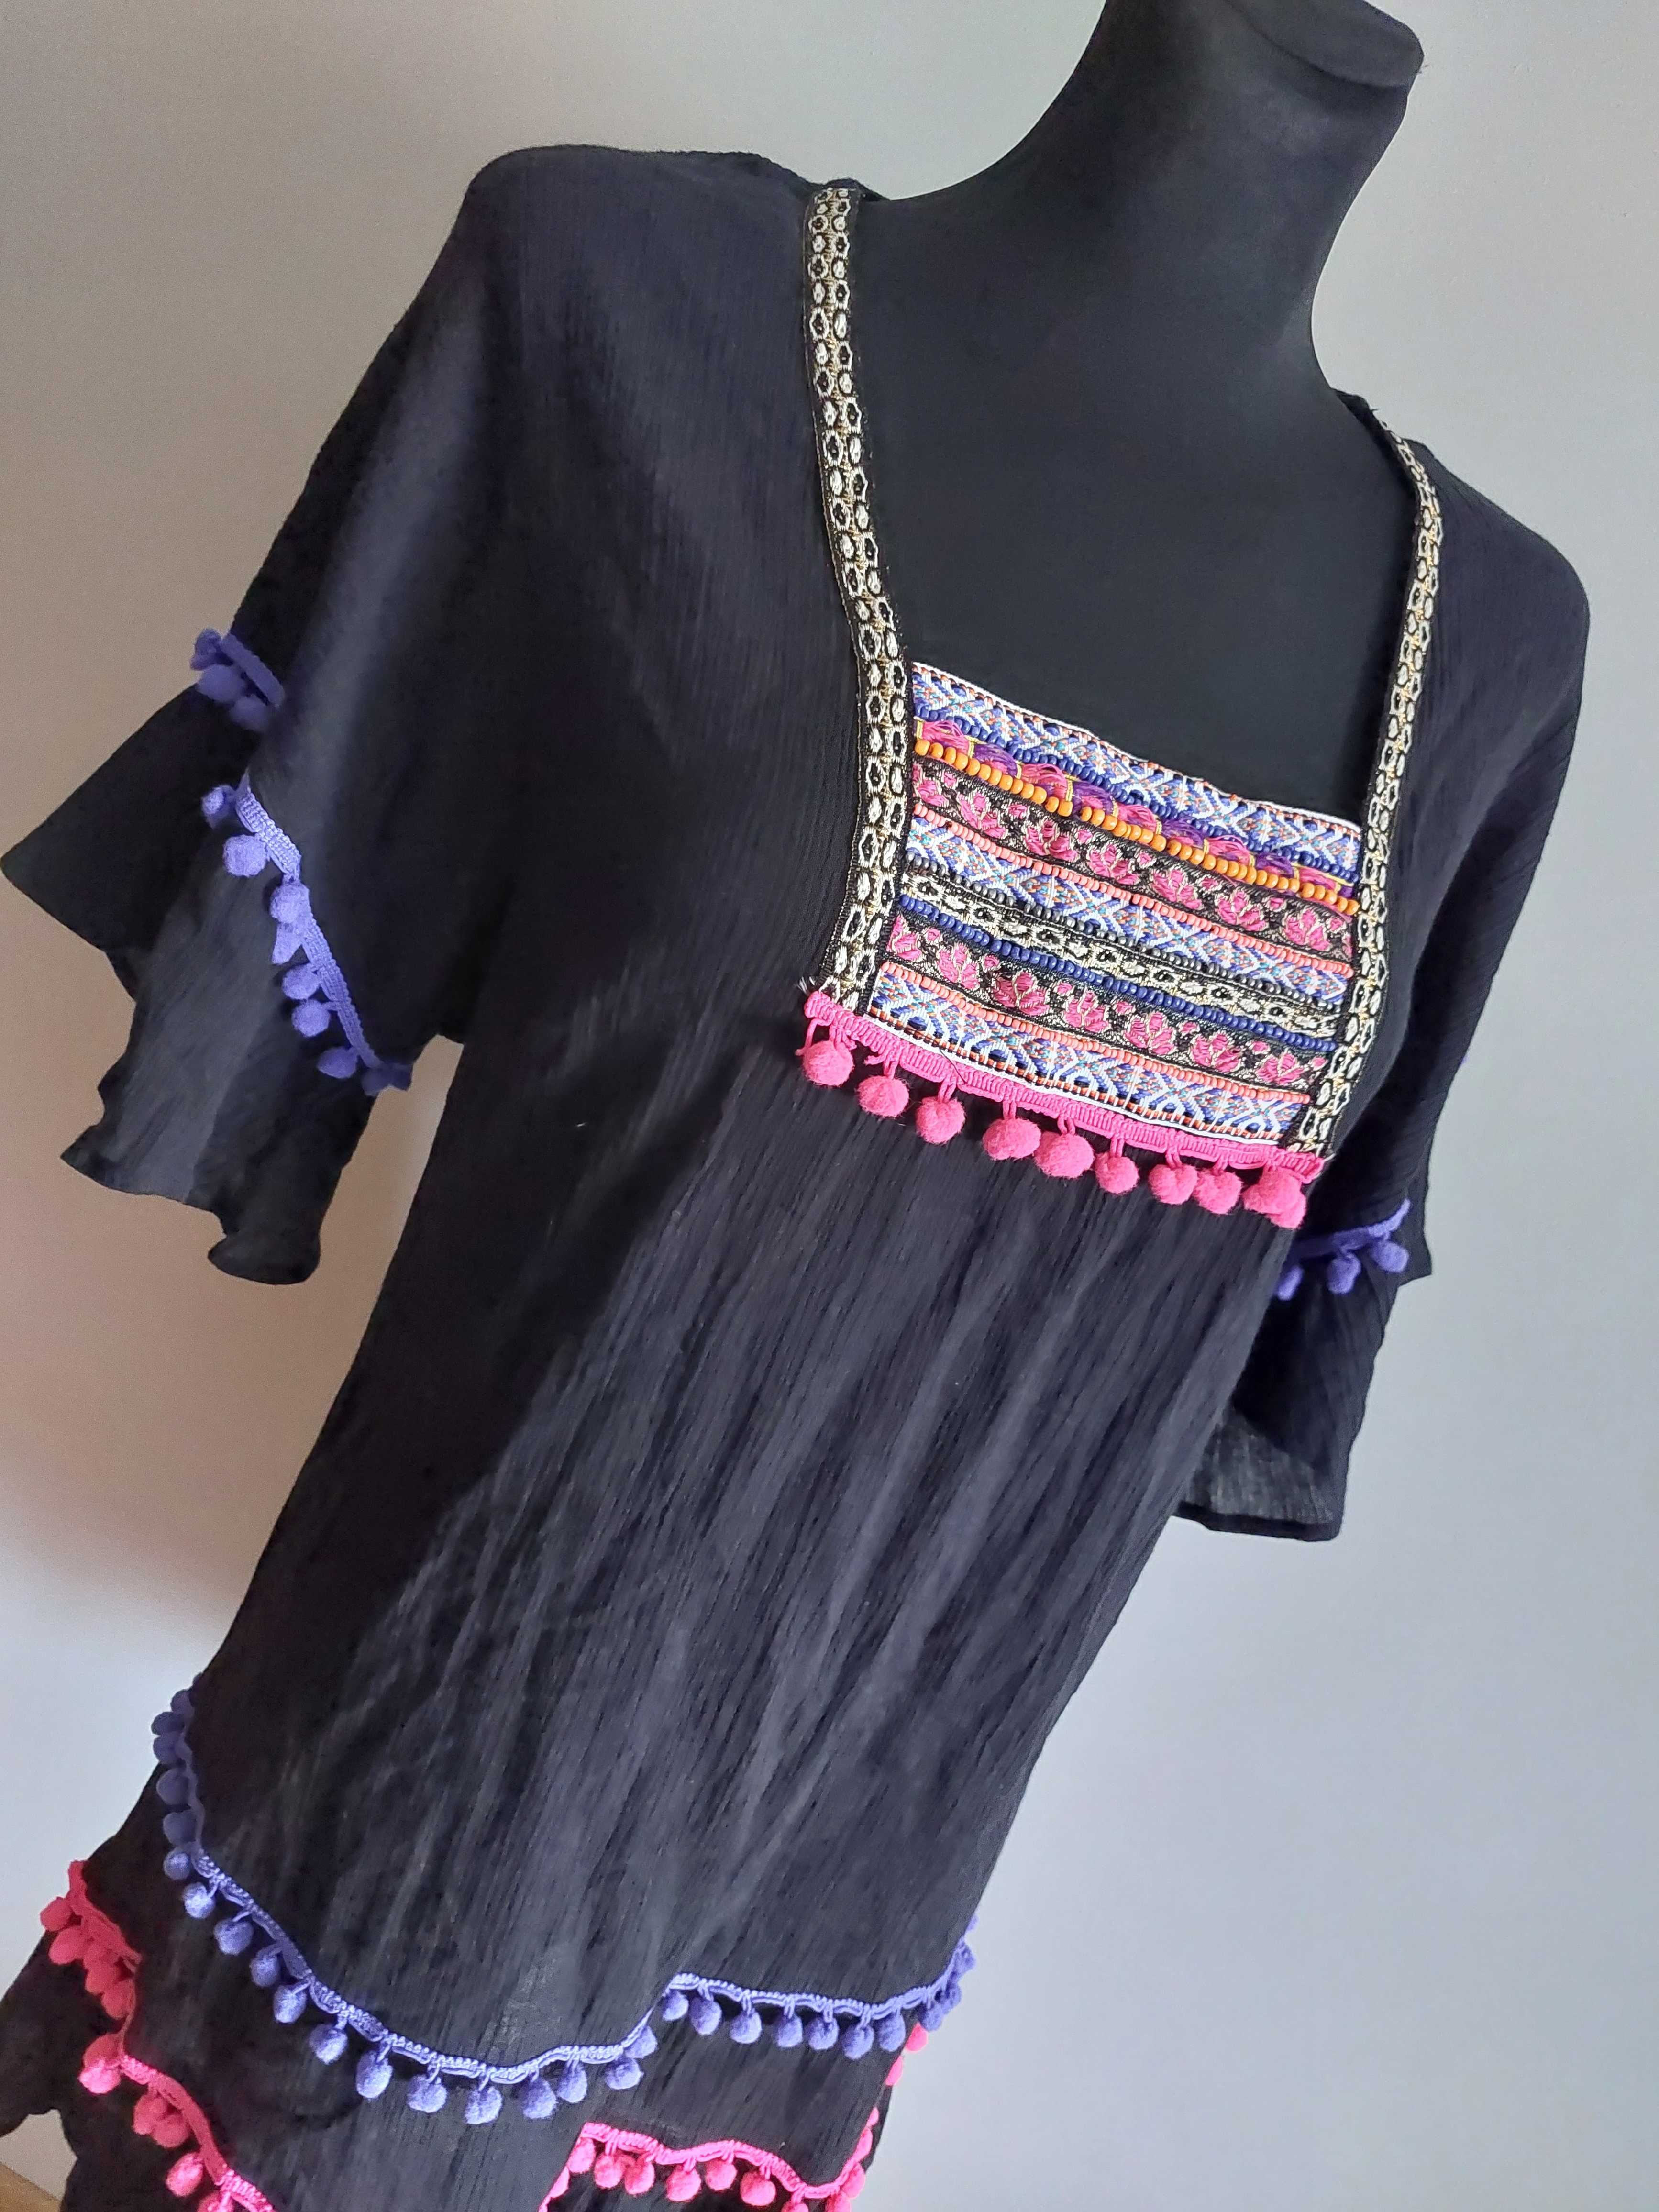 czarna sukienka oversize xs s m l pompony bawełna boho vintage hippie